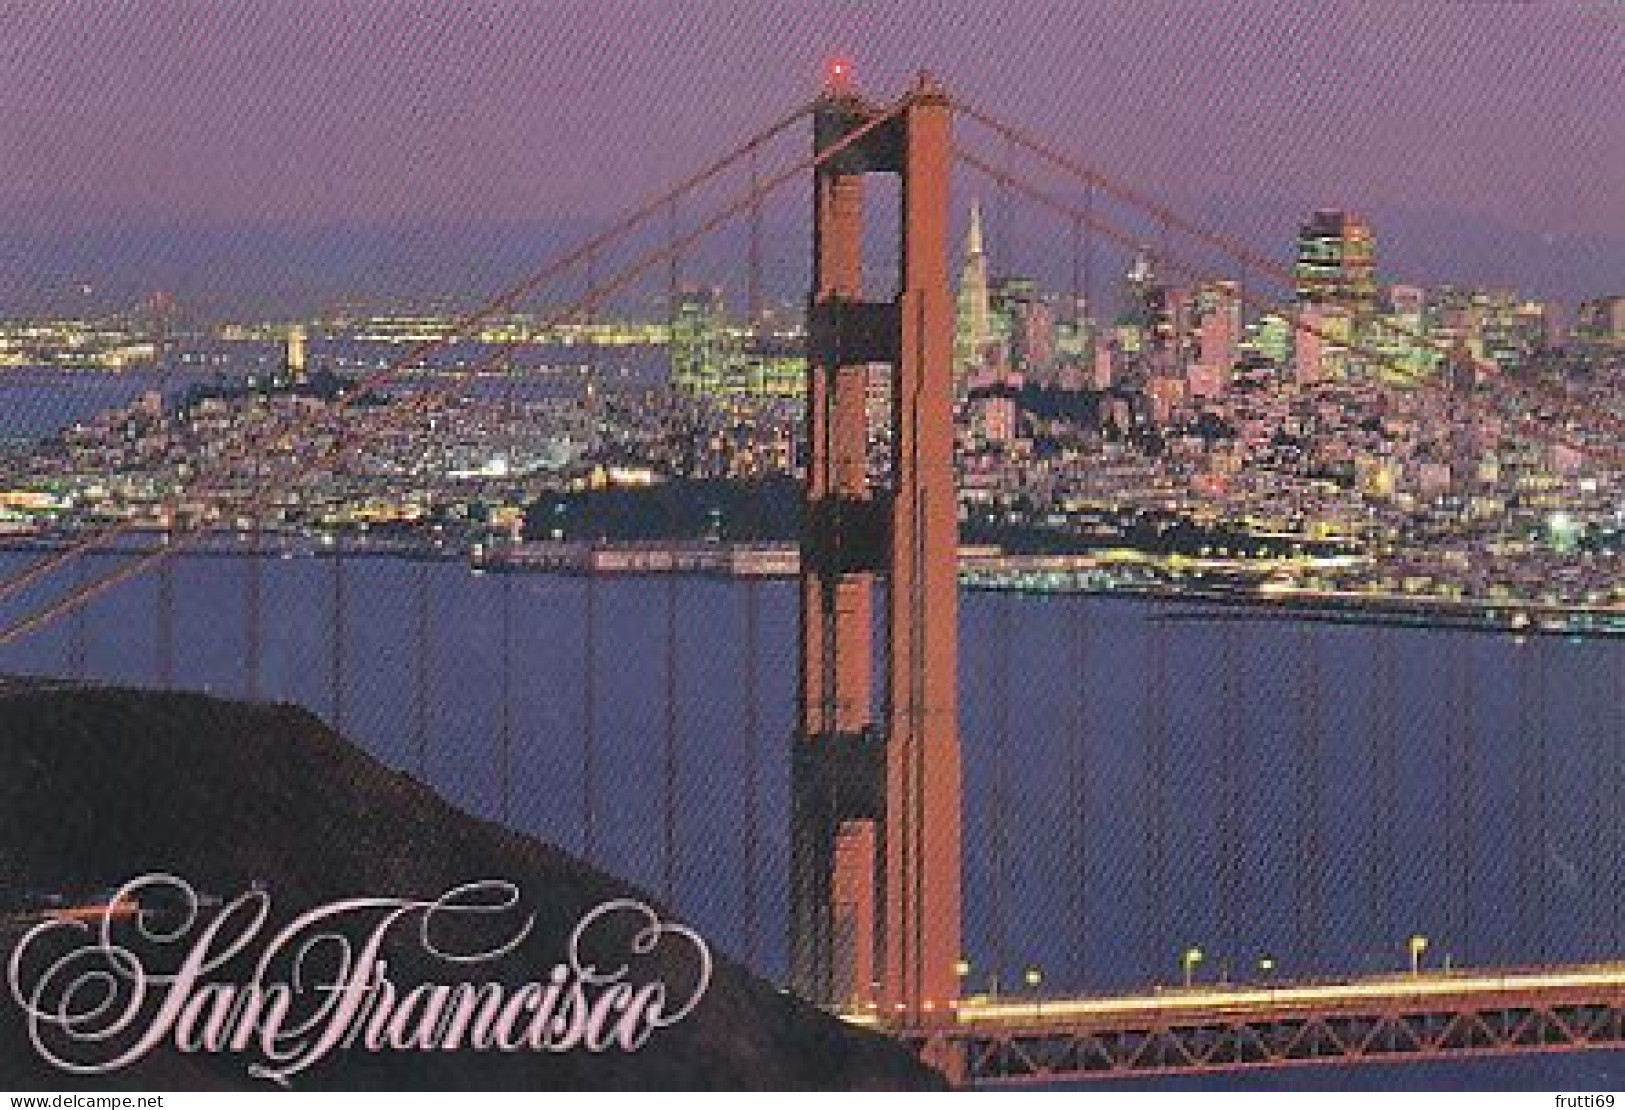 AK 214841 USA - California - San Francisco - Golden Gate Bridge - San Francisco